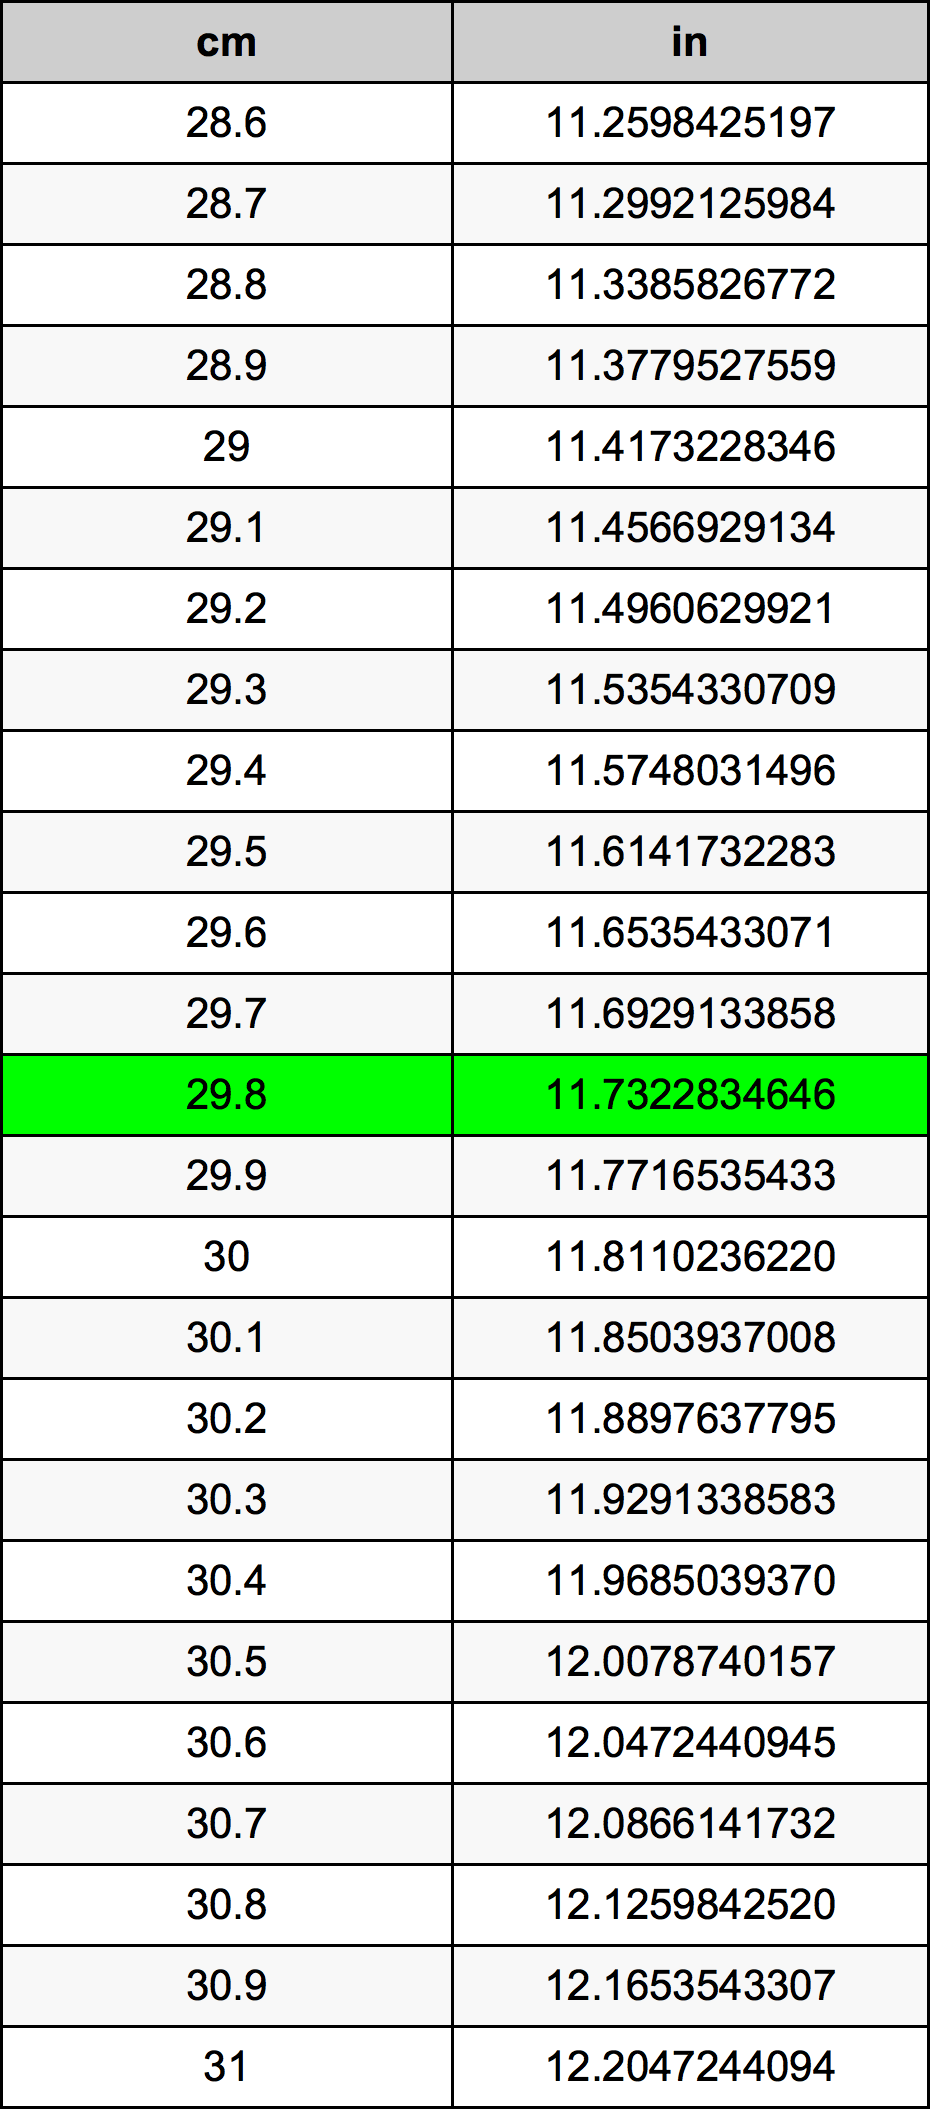 29.8 Centiméter átszámítási táblázat